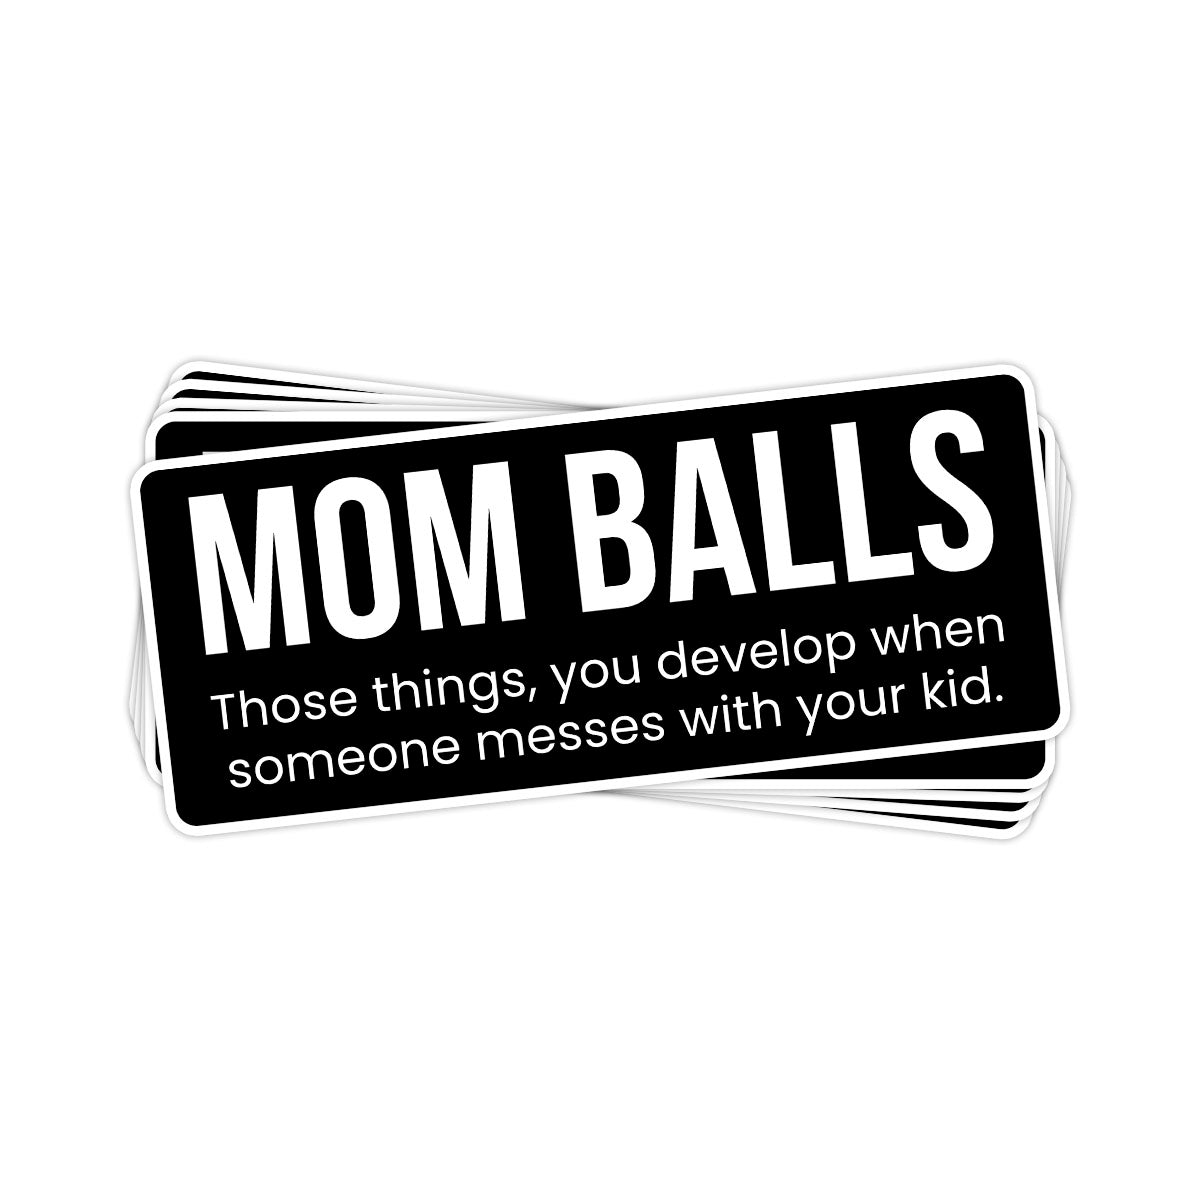 Mom Balls Vinyl Sticker - BustedTees.com